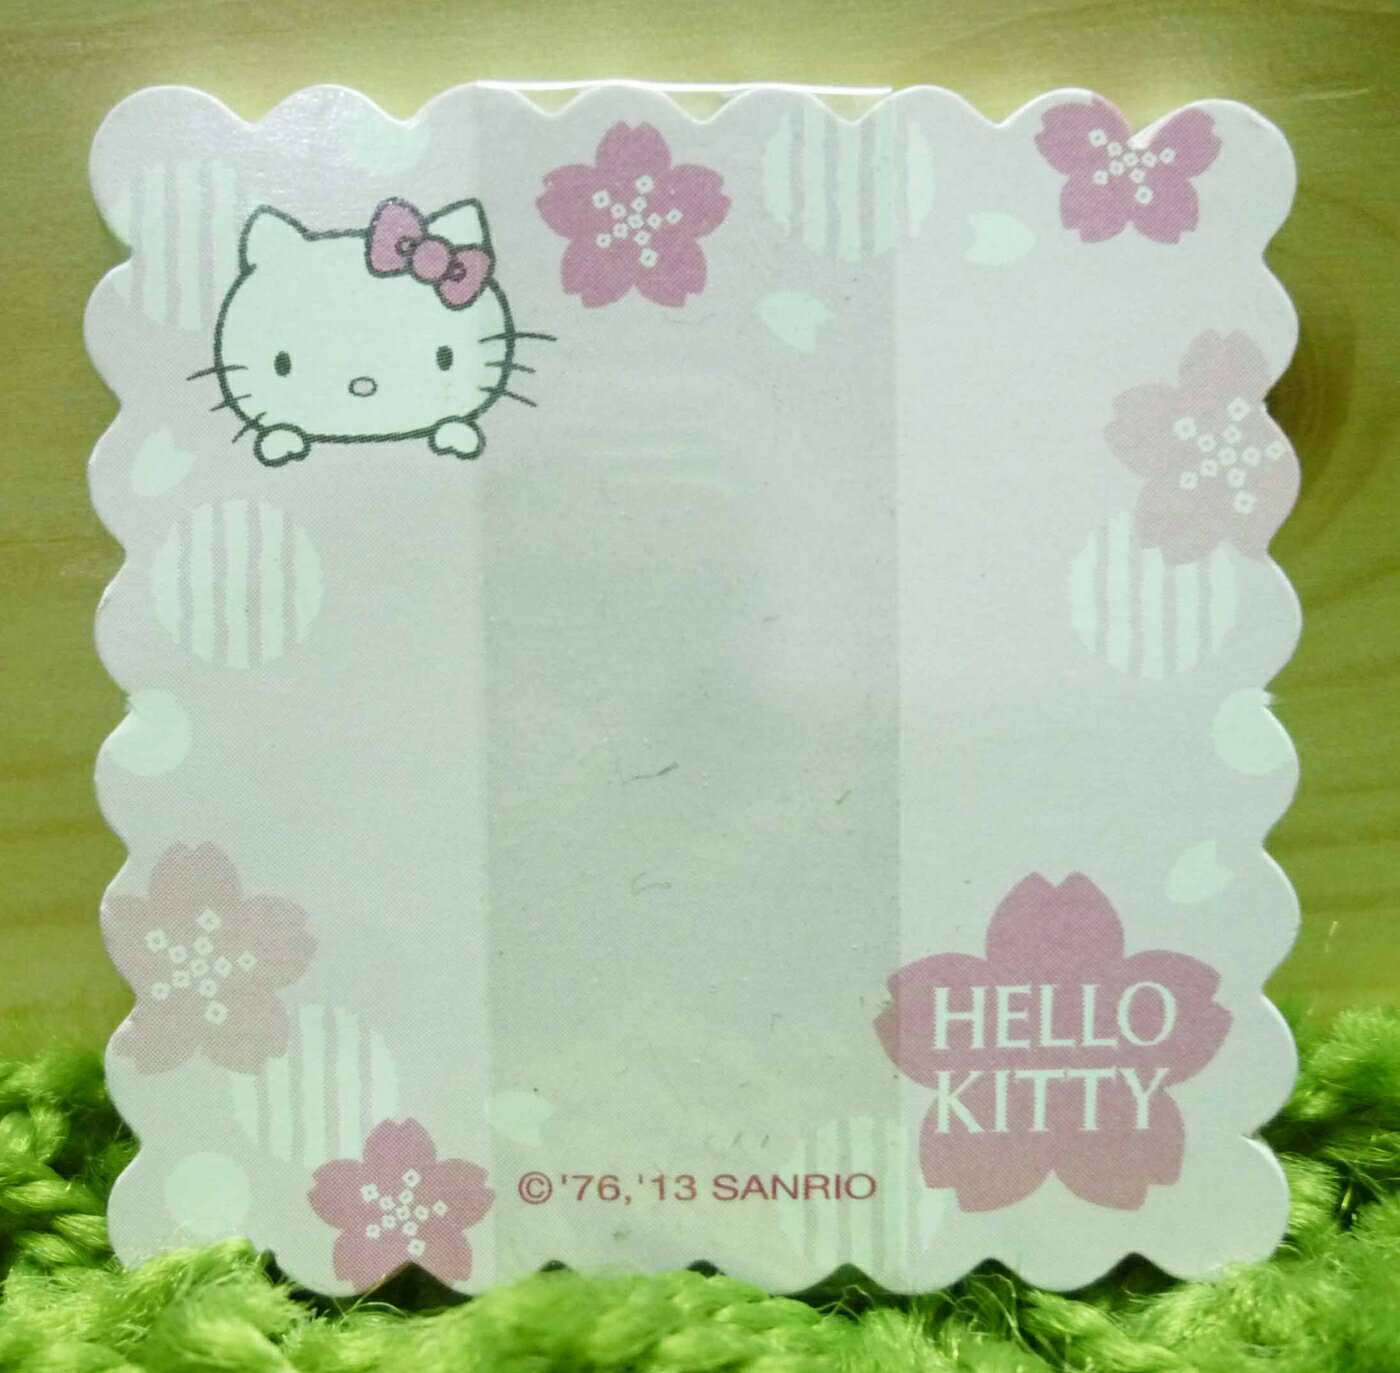 【震撼精品百貨】Hello Kitty 凱蒂貓 小卡片組 櫻花 震撼日式精品百貨